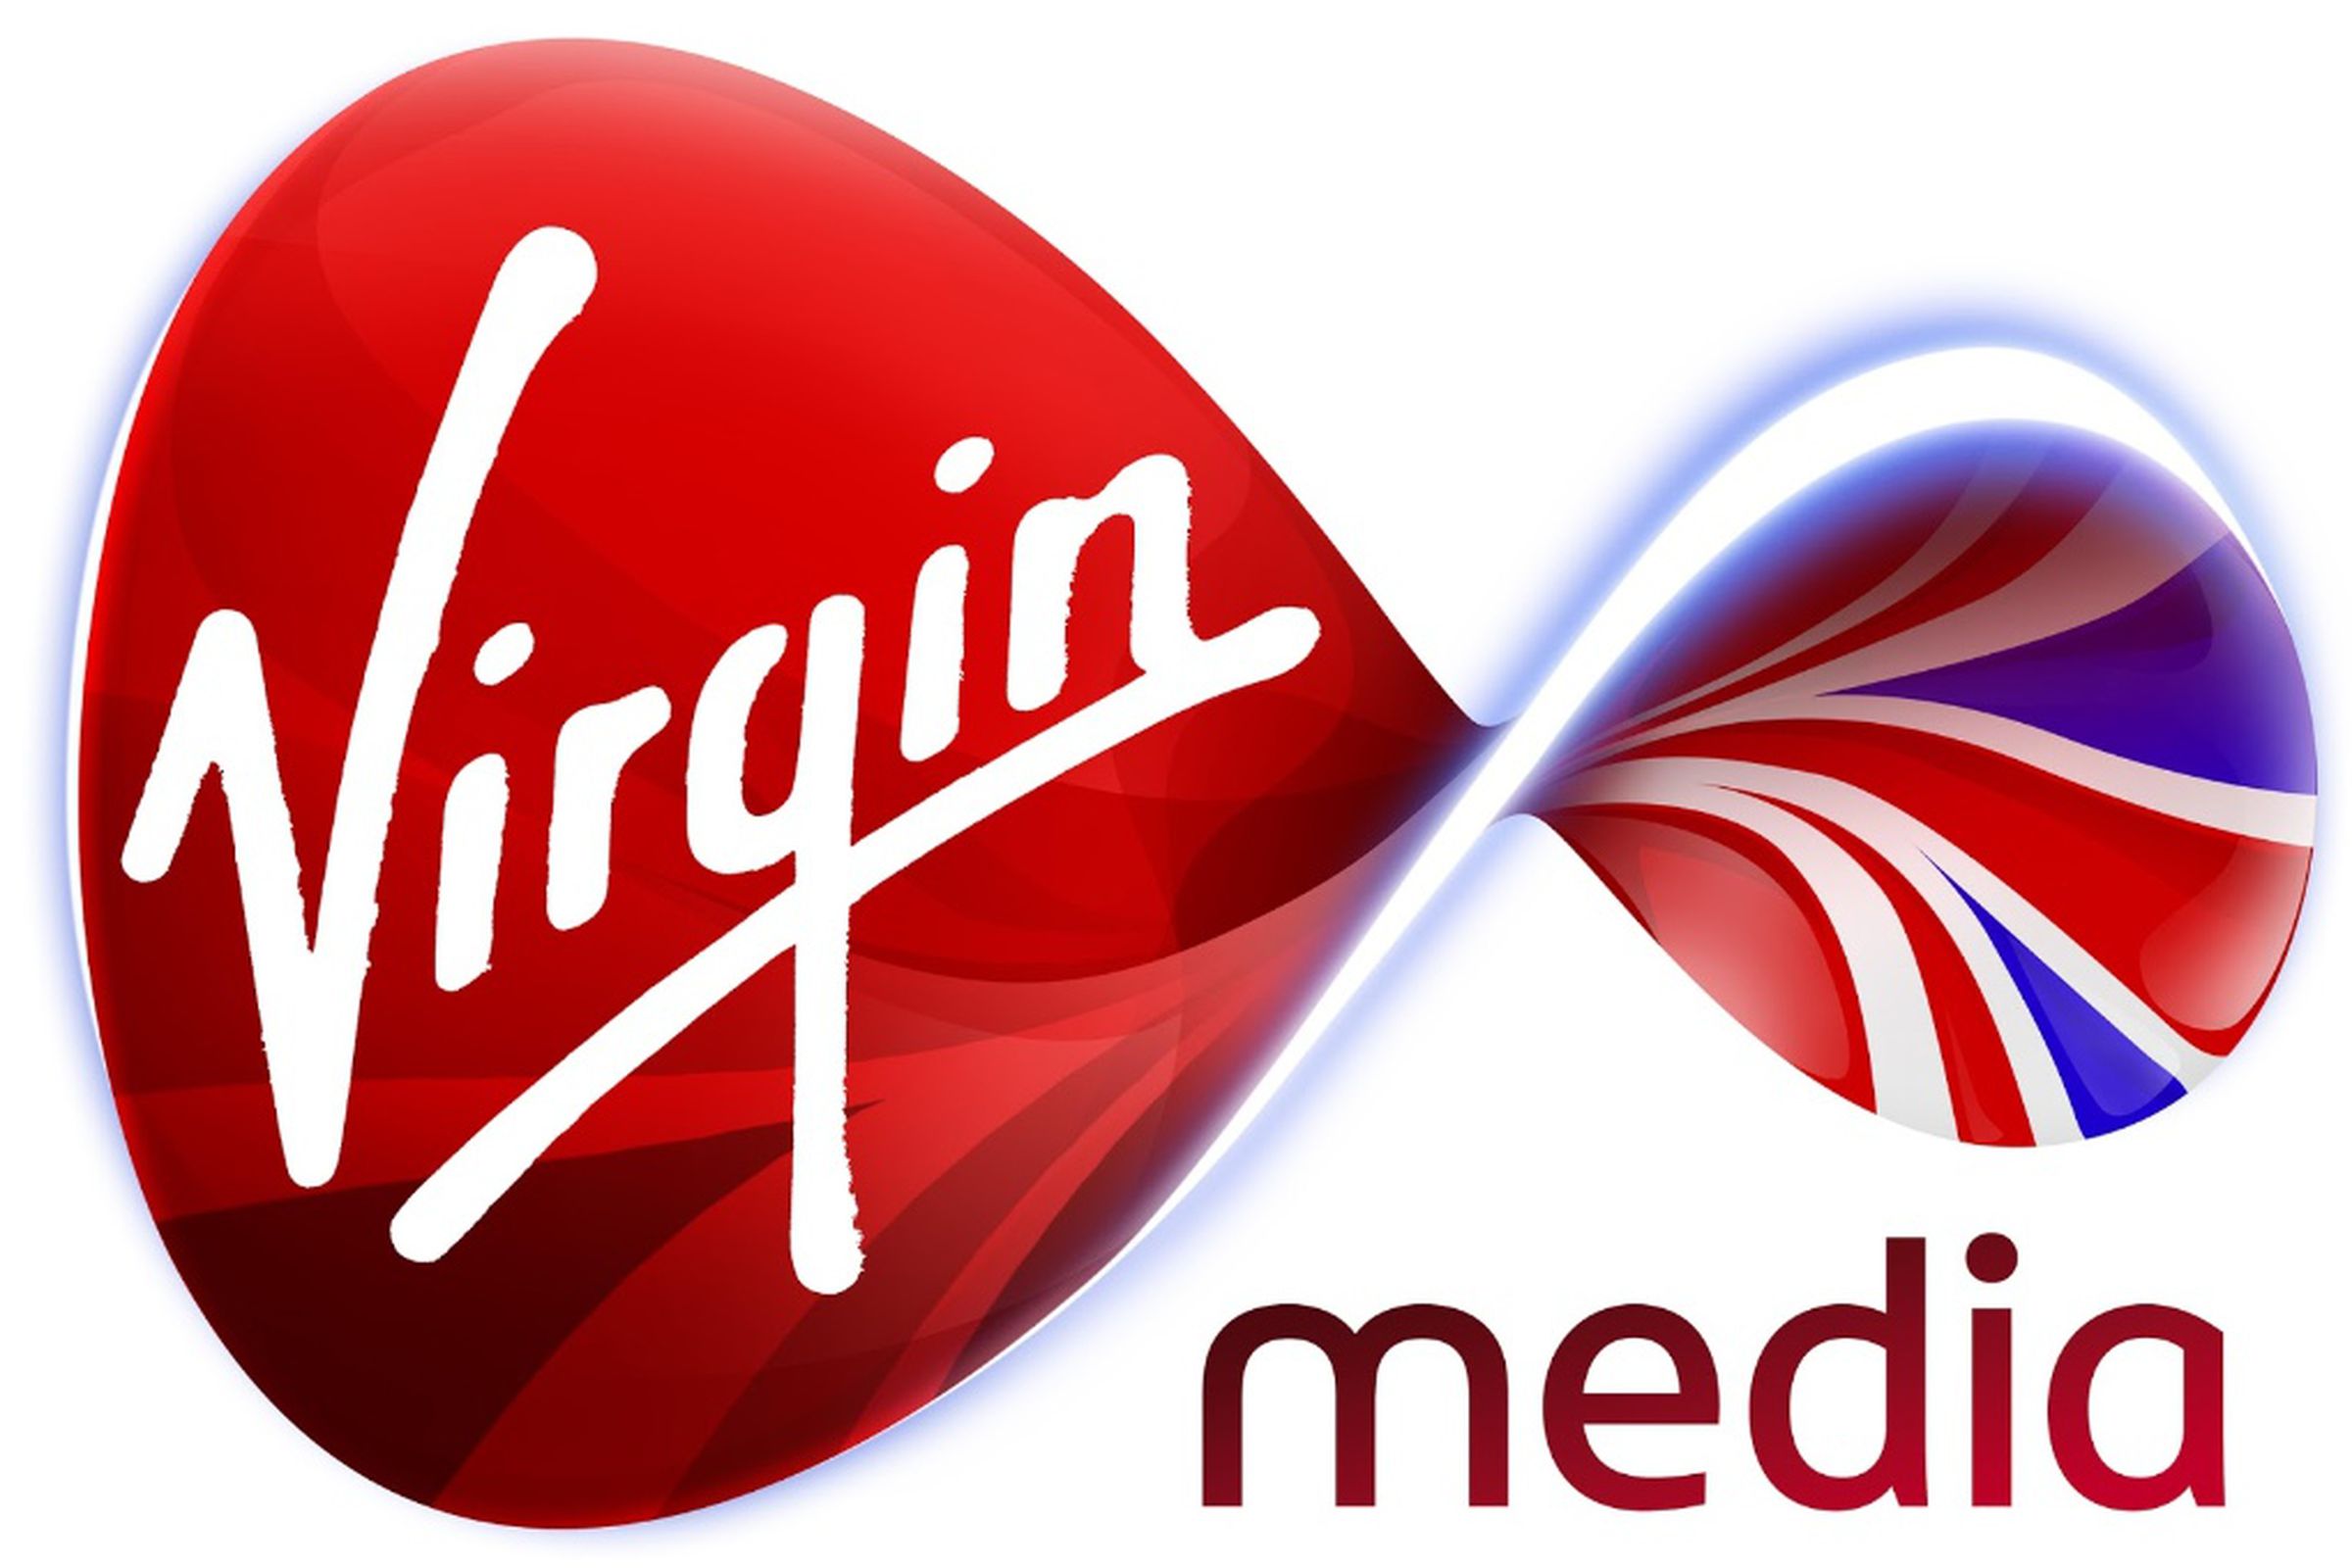 virgin media (official 1020)